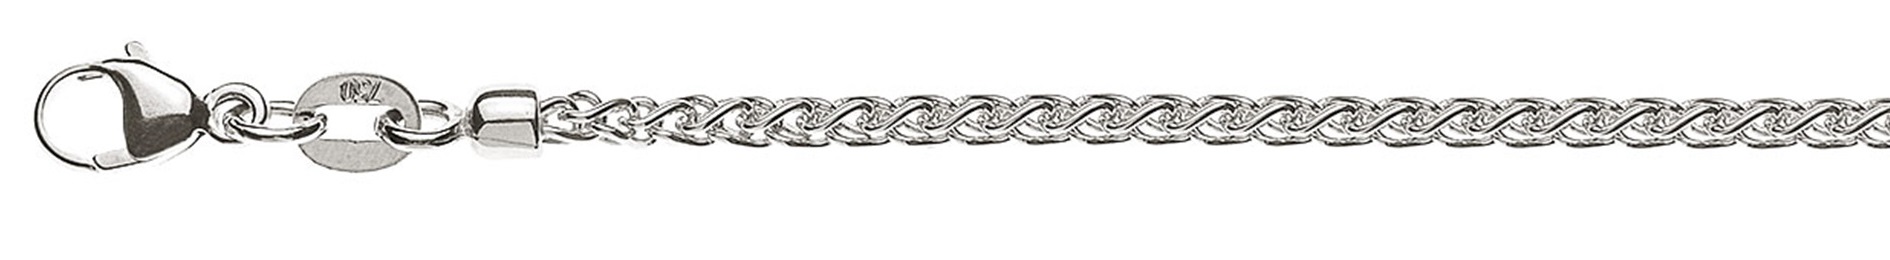 AURONOS Prestige Halskette Weissgold 18K Zopfkette 42cm 2.15mm